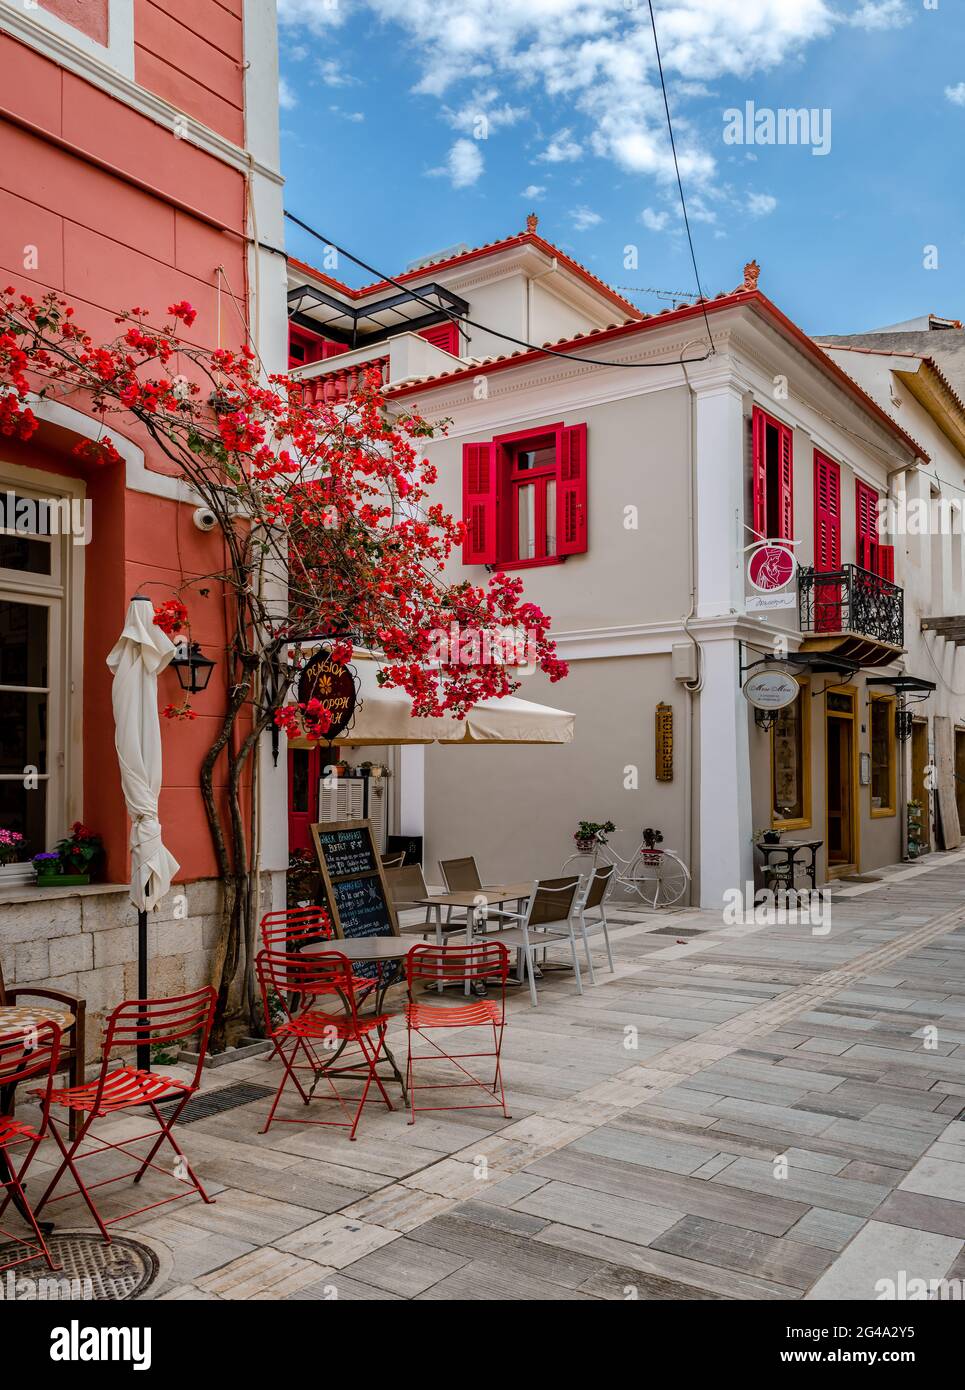 Splendidi edifici tradizionali nel centro storico. Nafplio (o Nauplion) è una città storica, essendo la prima capitale del moderno stato greco. Foto Stock